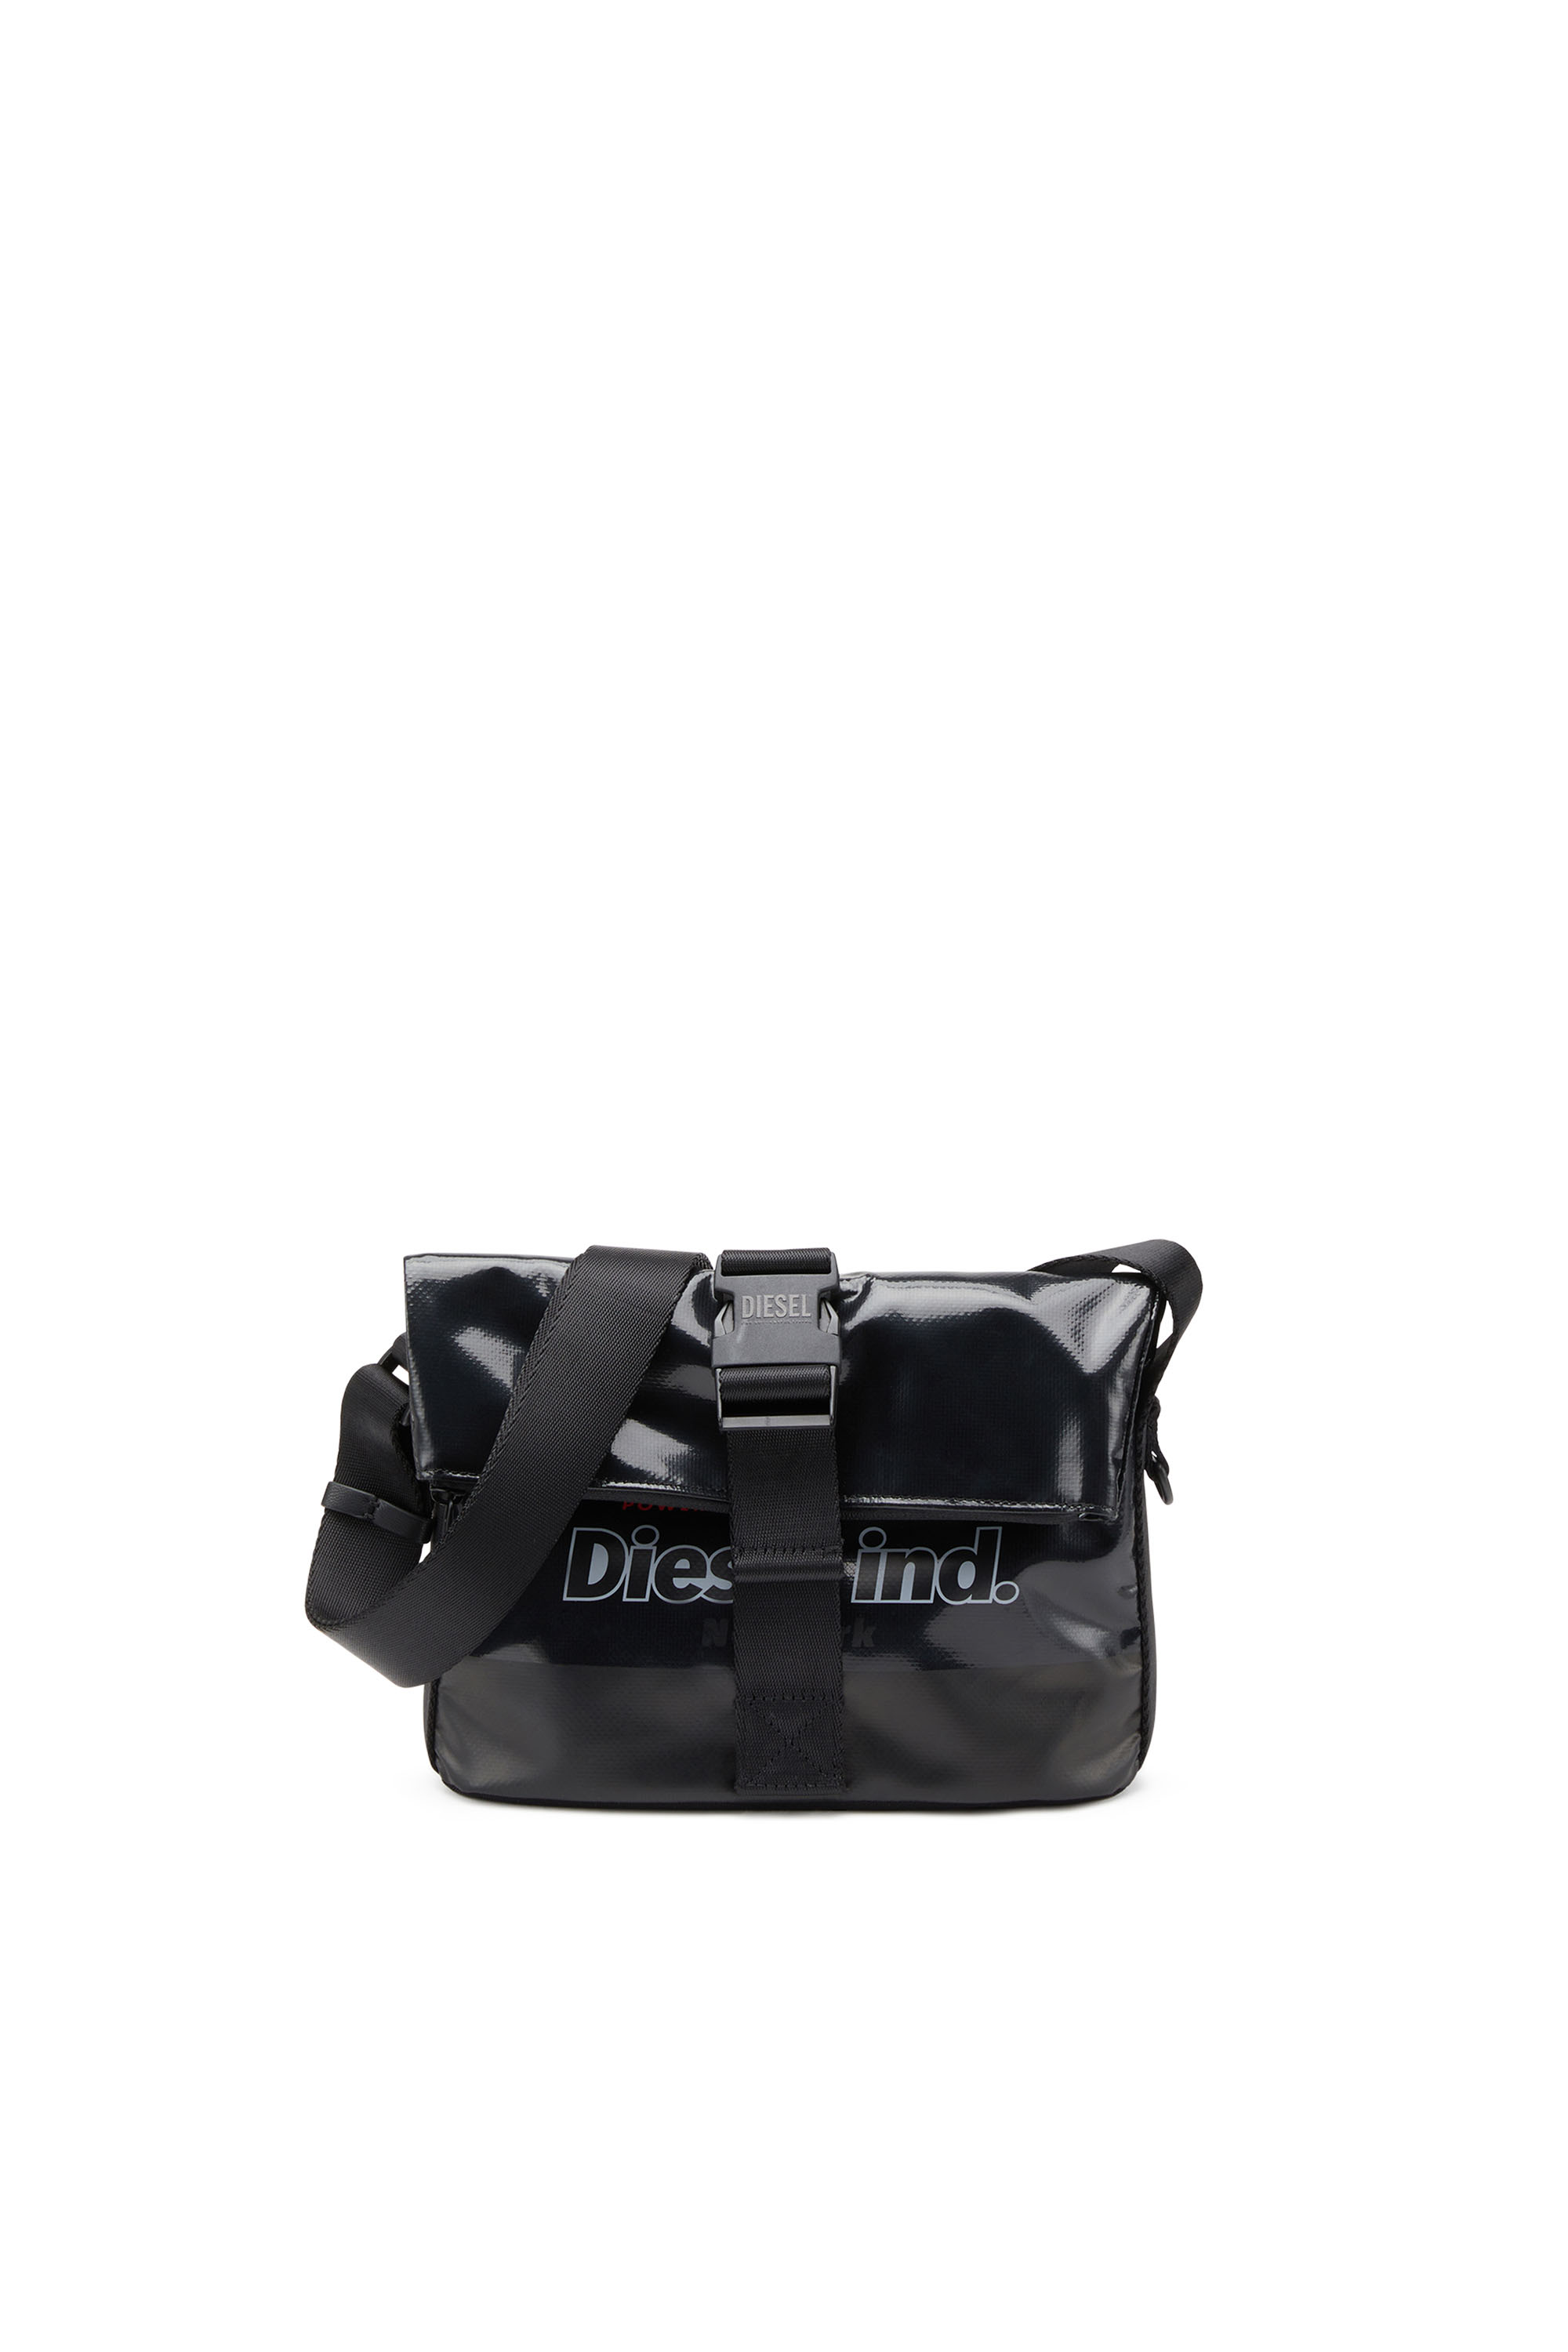 Diesel - TRAP/D SHOULDER BAG S, Noir - Image 1